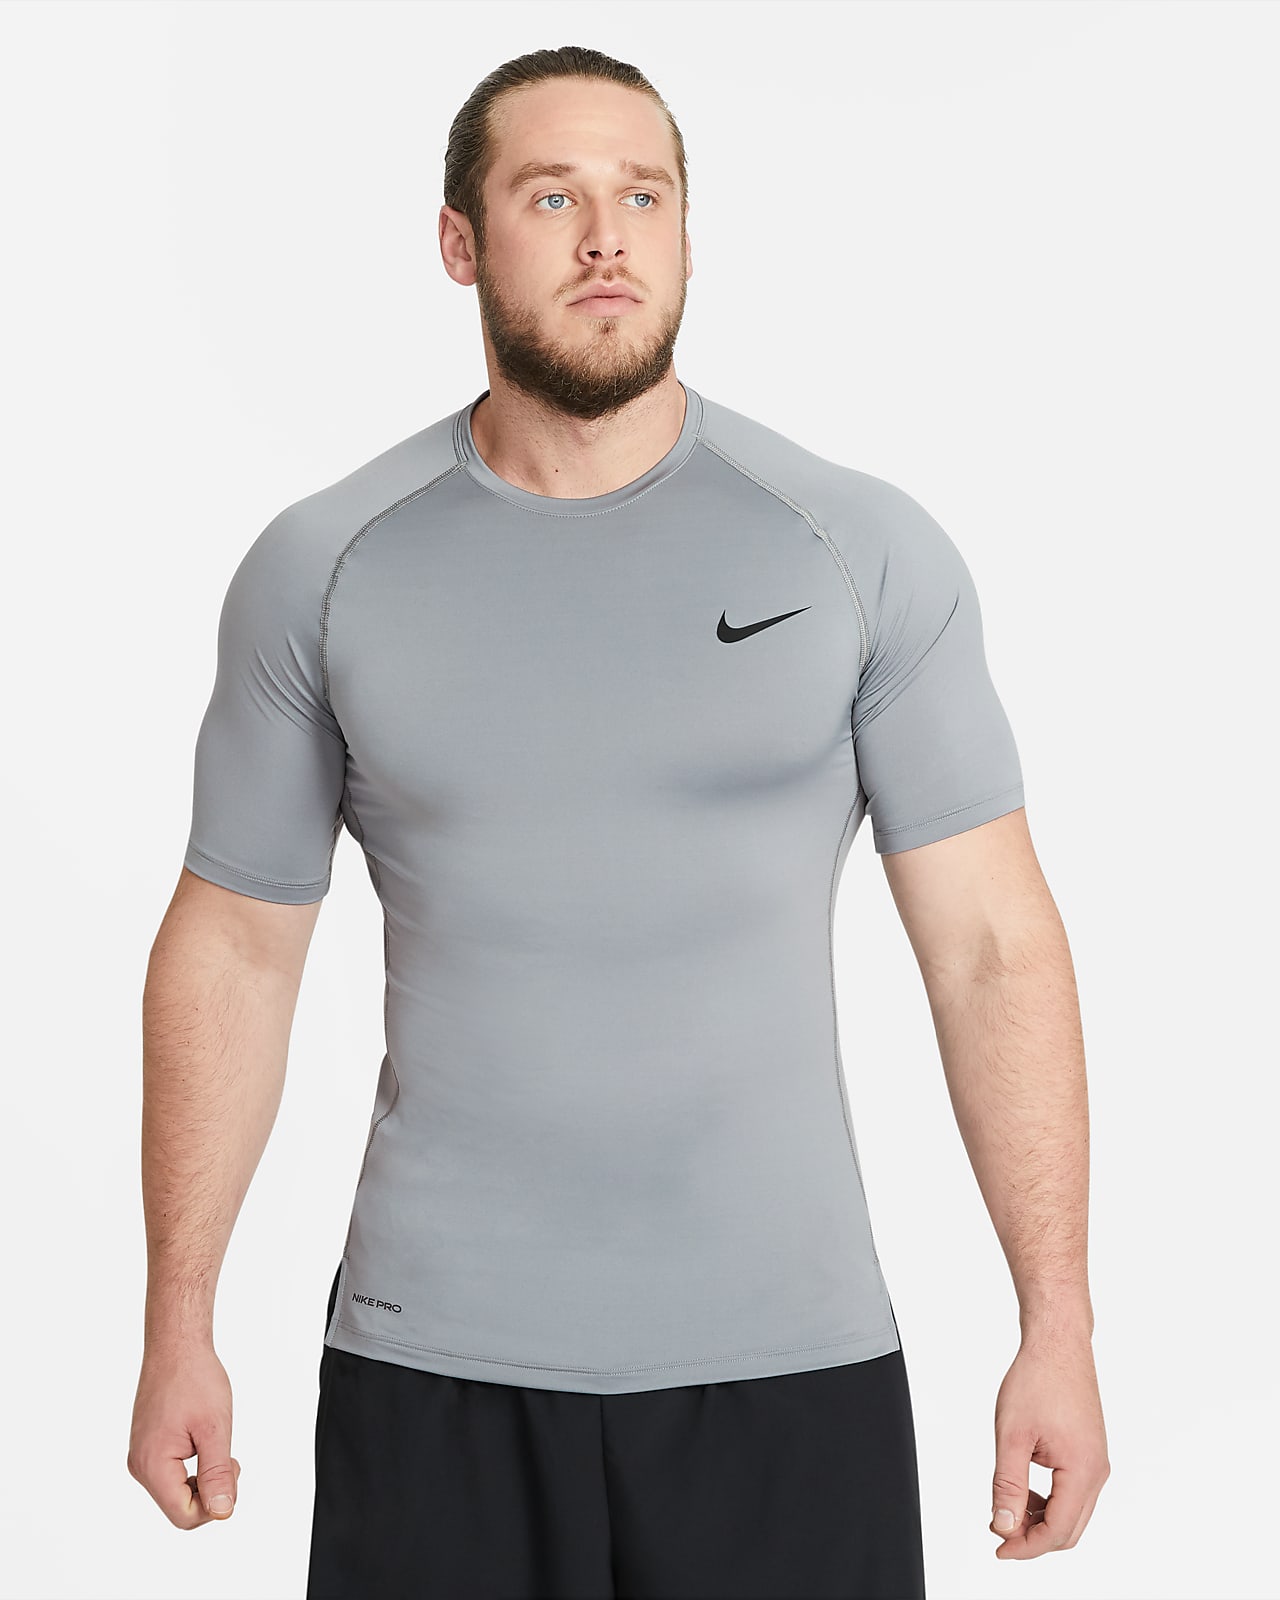 gå på pension mangfoldighed Duftende Nike Pro Men's Tight Fit Short-Sleeve Top. Nike.com